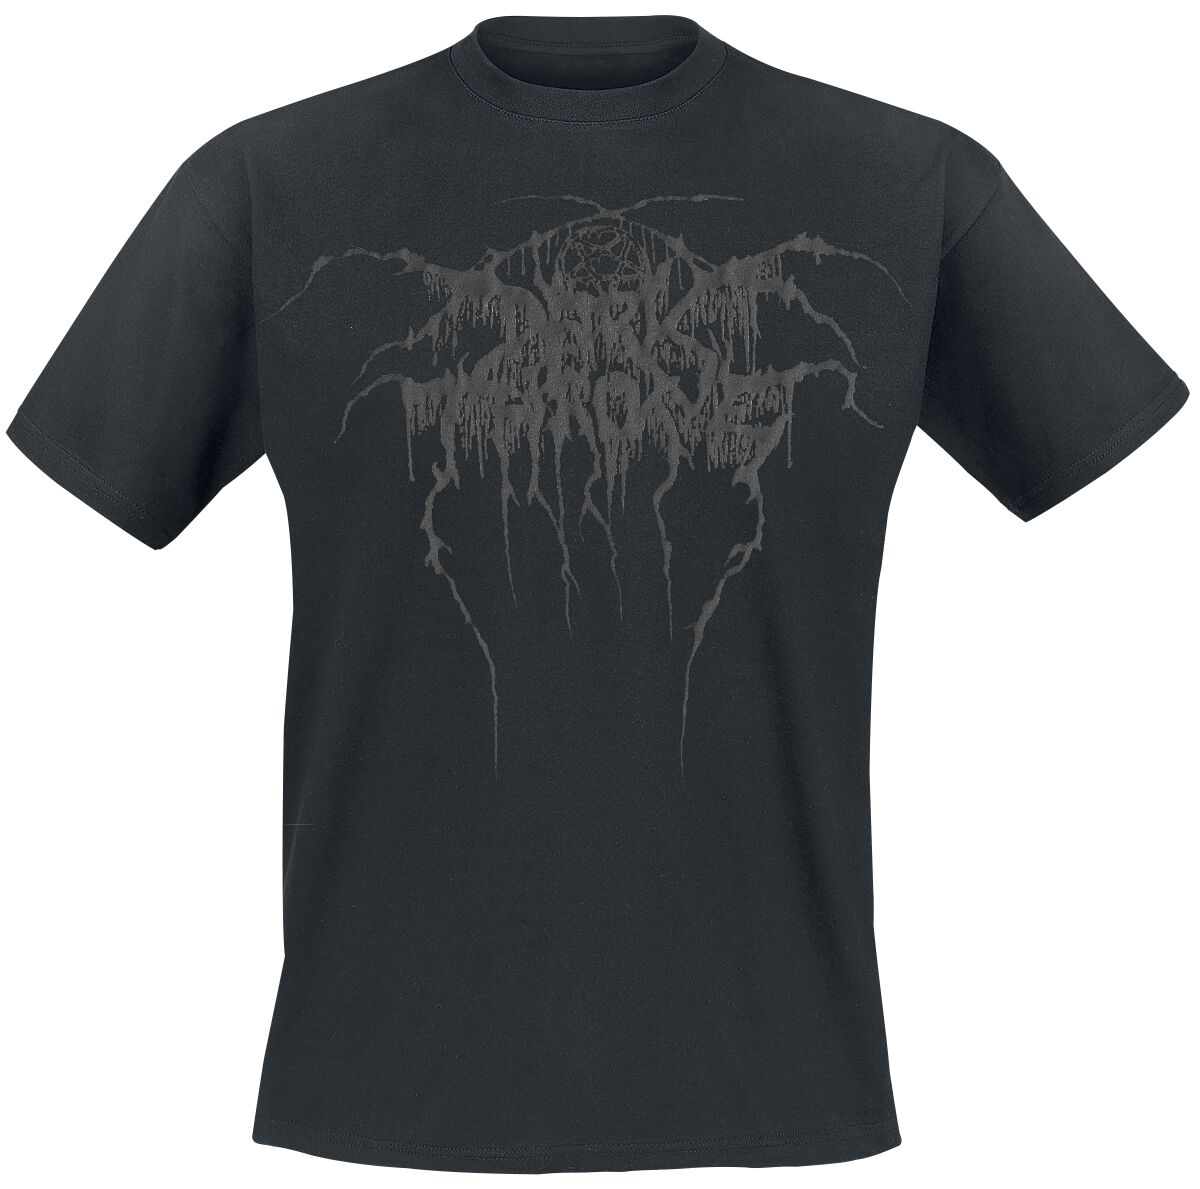 Darkthrone T-Shirt - True Norwegian Black Metal - S bis XXL - für Männer - Größe XL - schwarz  - Lizenziertes Merchandise!